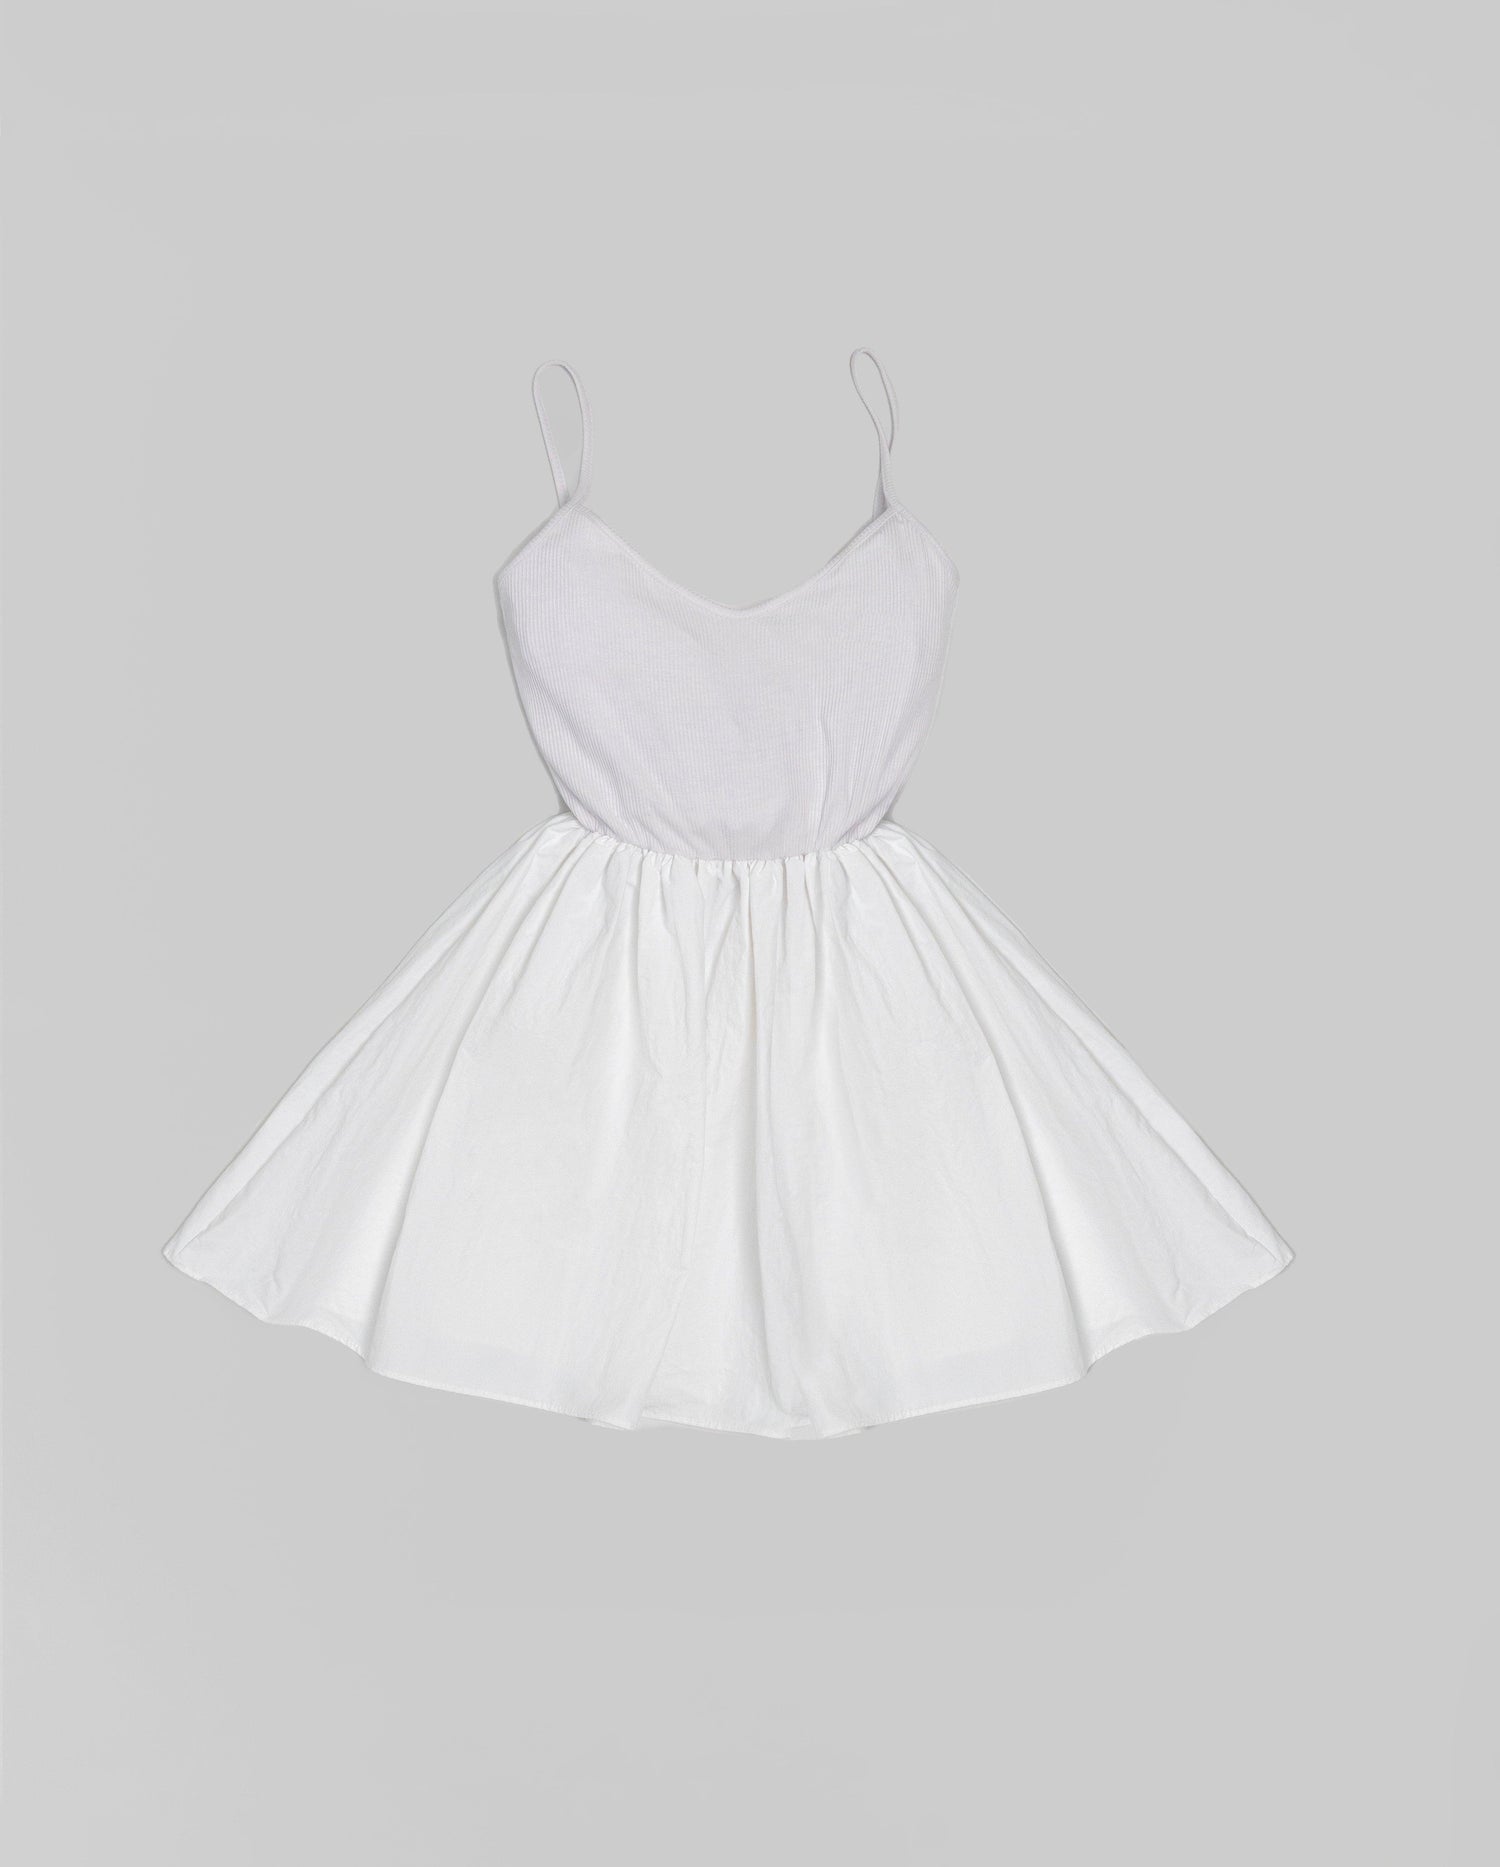 Skyler Strappy Flare Mini Dress / White - The Bekk